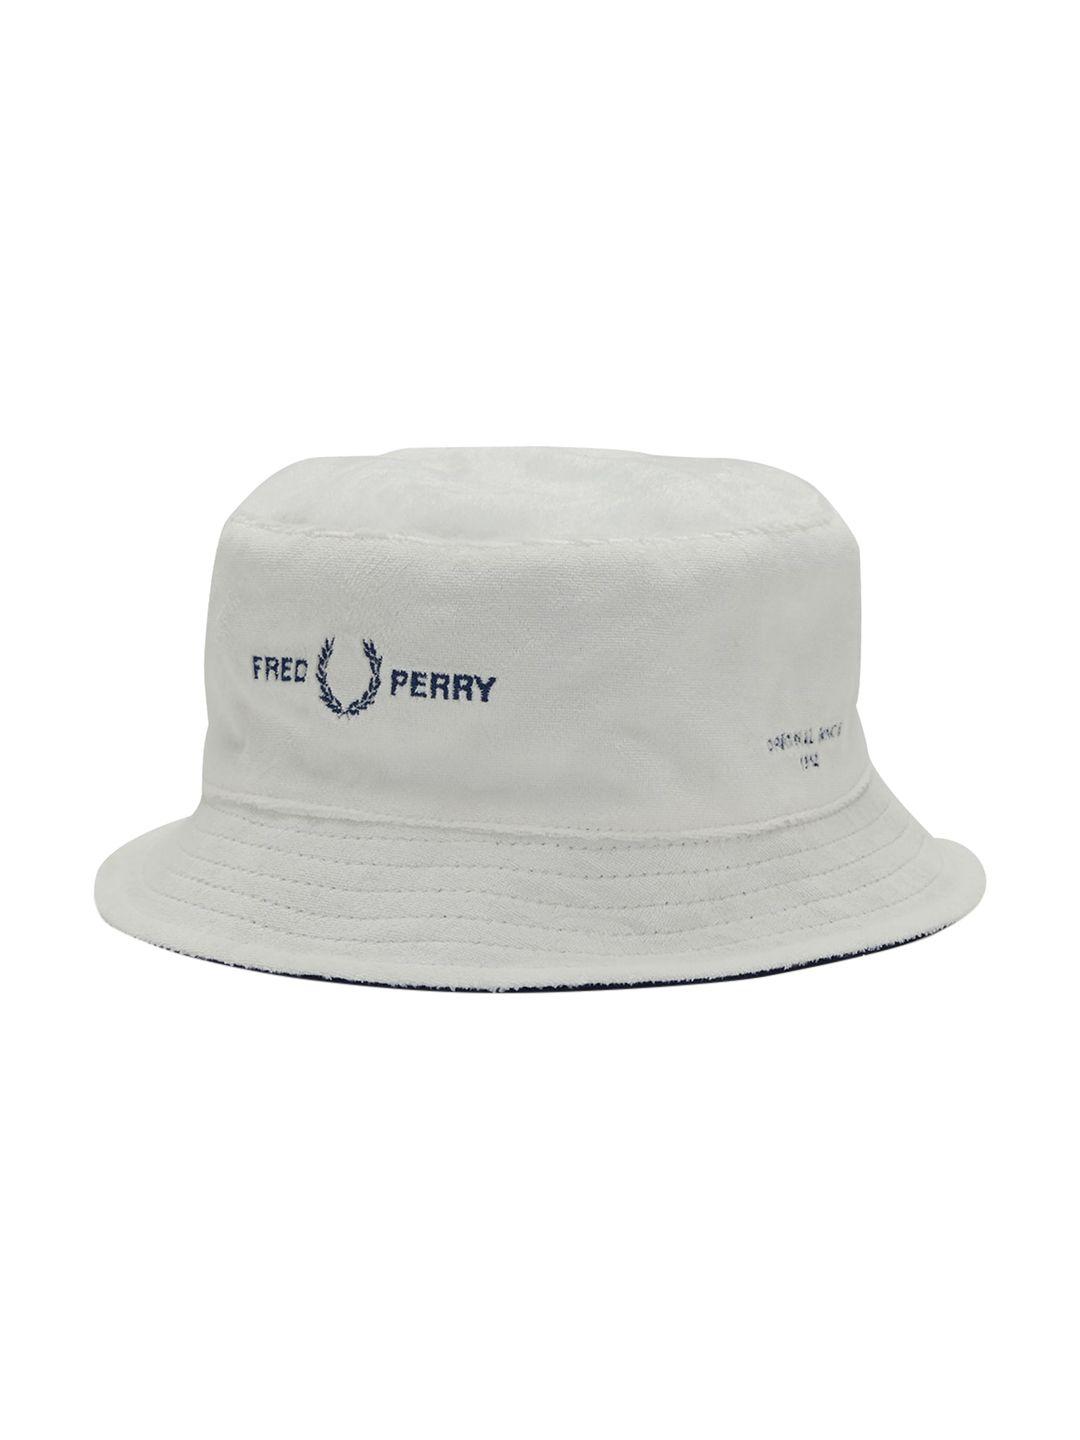 fred-perry-men-white-reversible-visor-cap